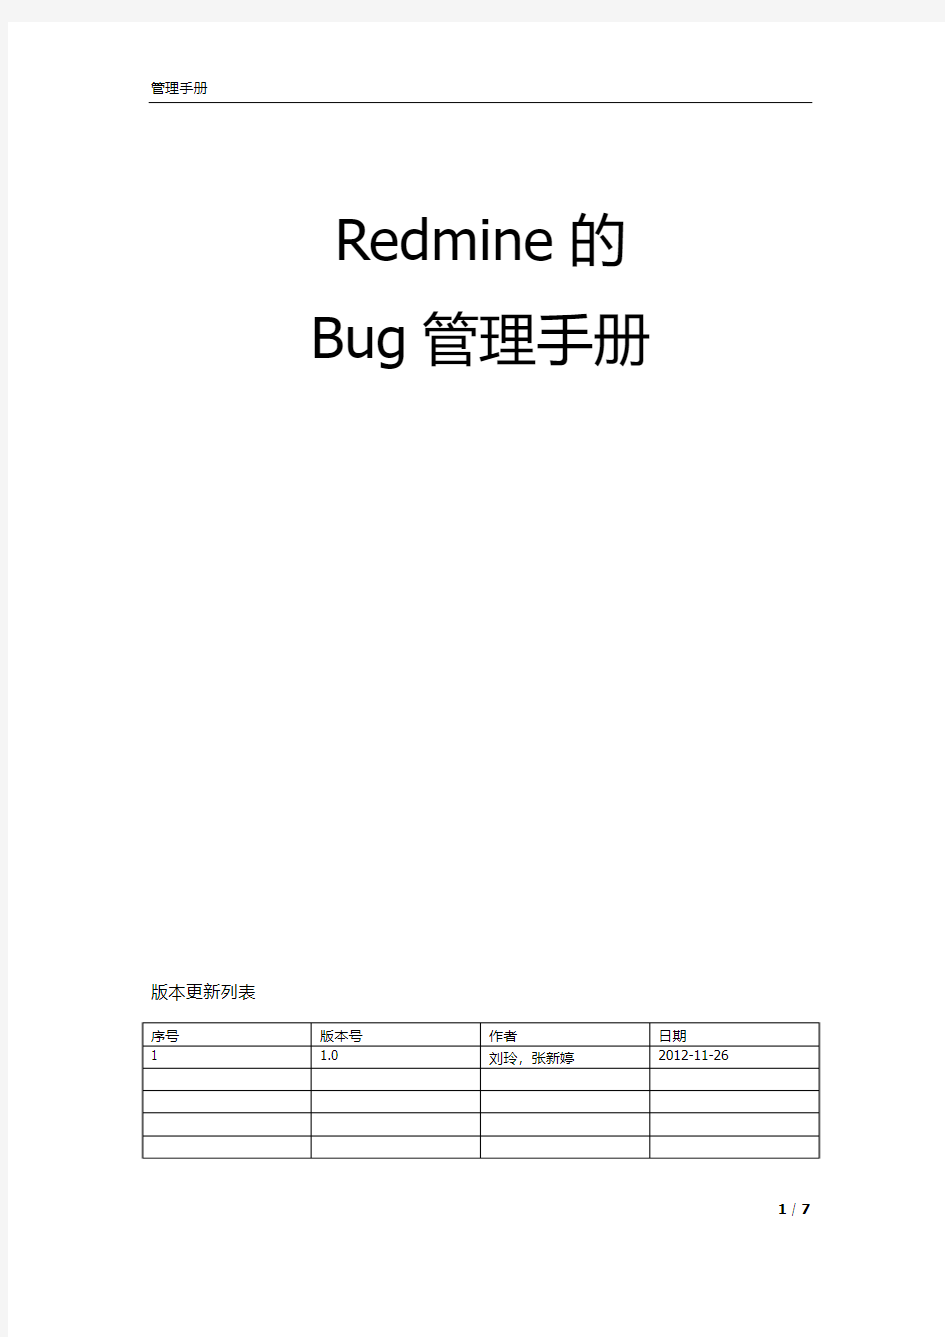 RedMine的问题管理流程